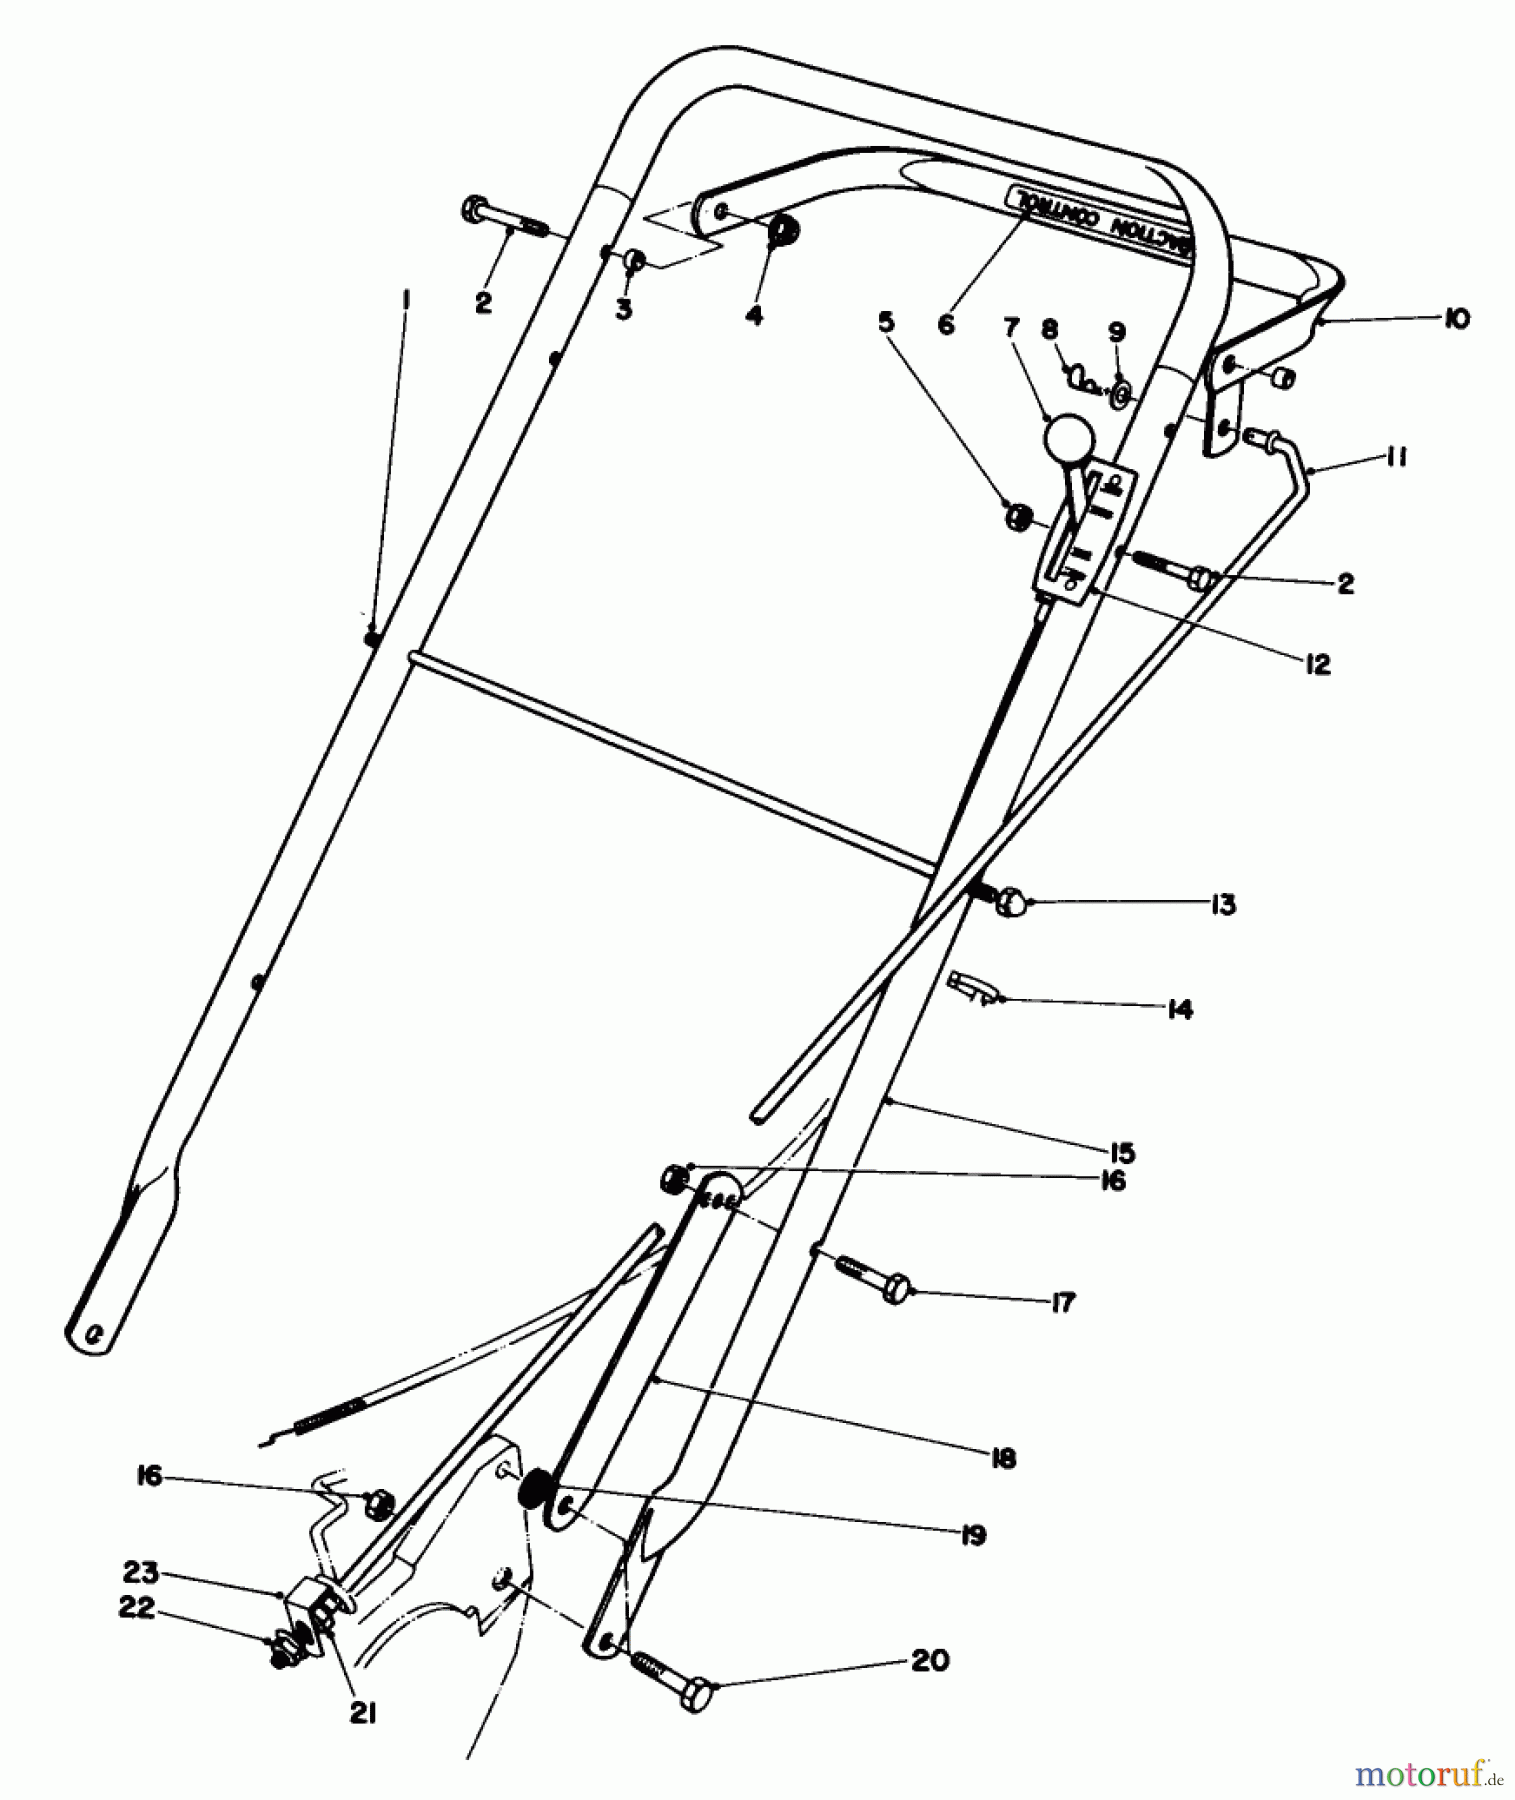  Toro Neu Mowers, Walk-Behind Seite 2 22015 - Toro Lawnmower, 1984 (4000001-4999999) HANDLE ASSEMBLY (MODEL 22020)